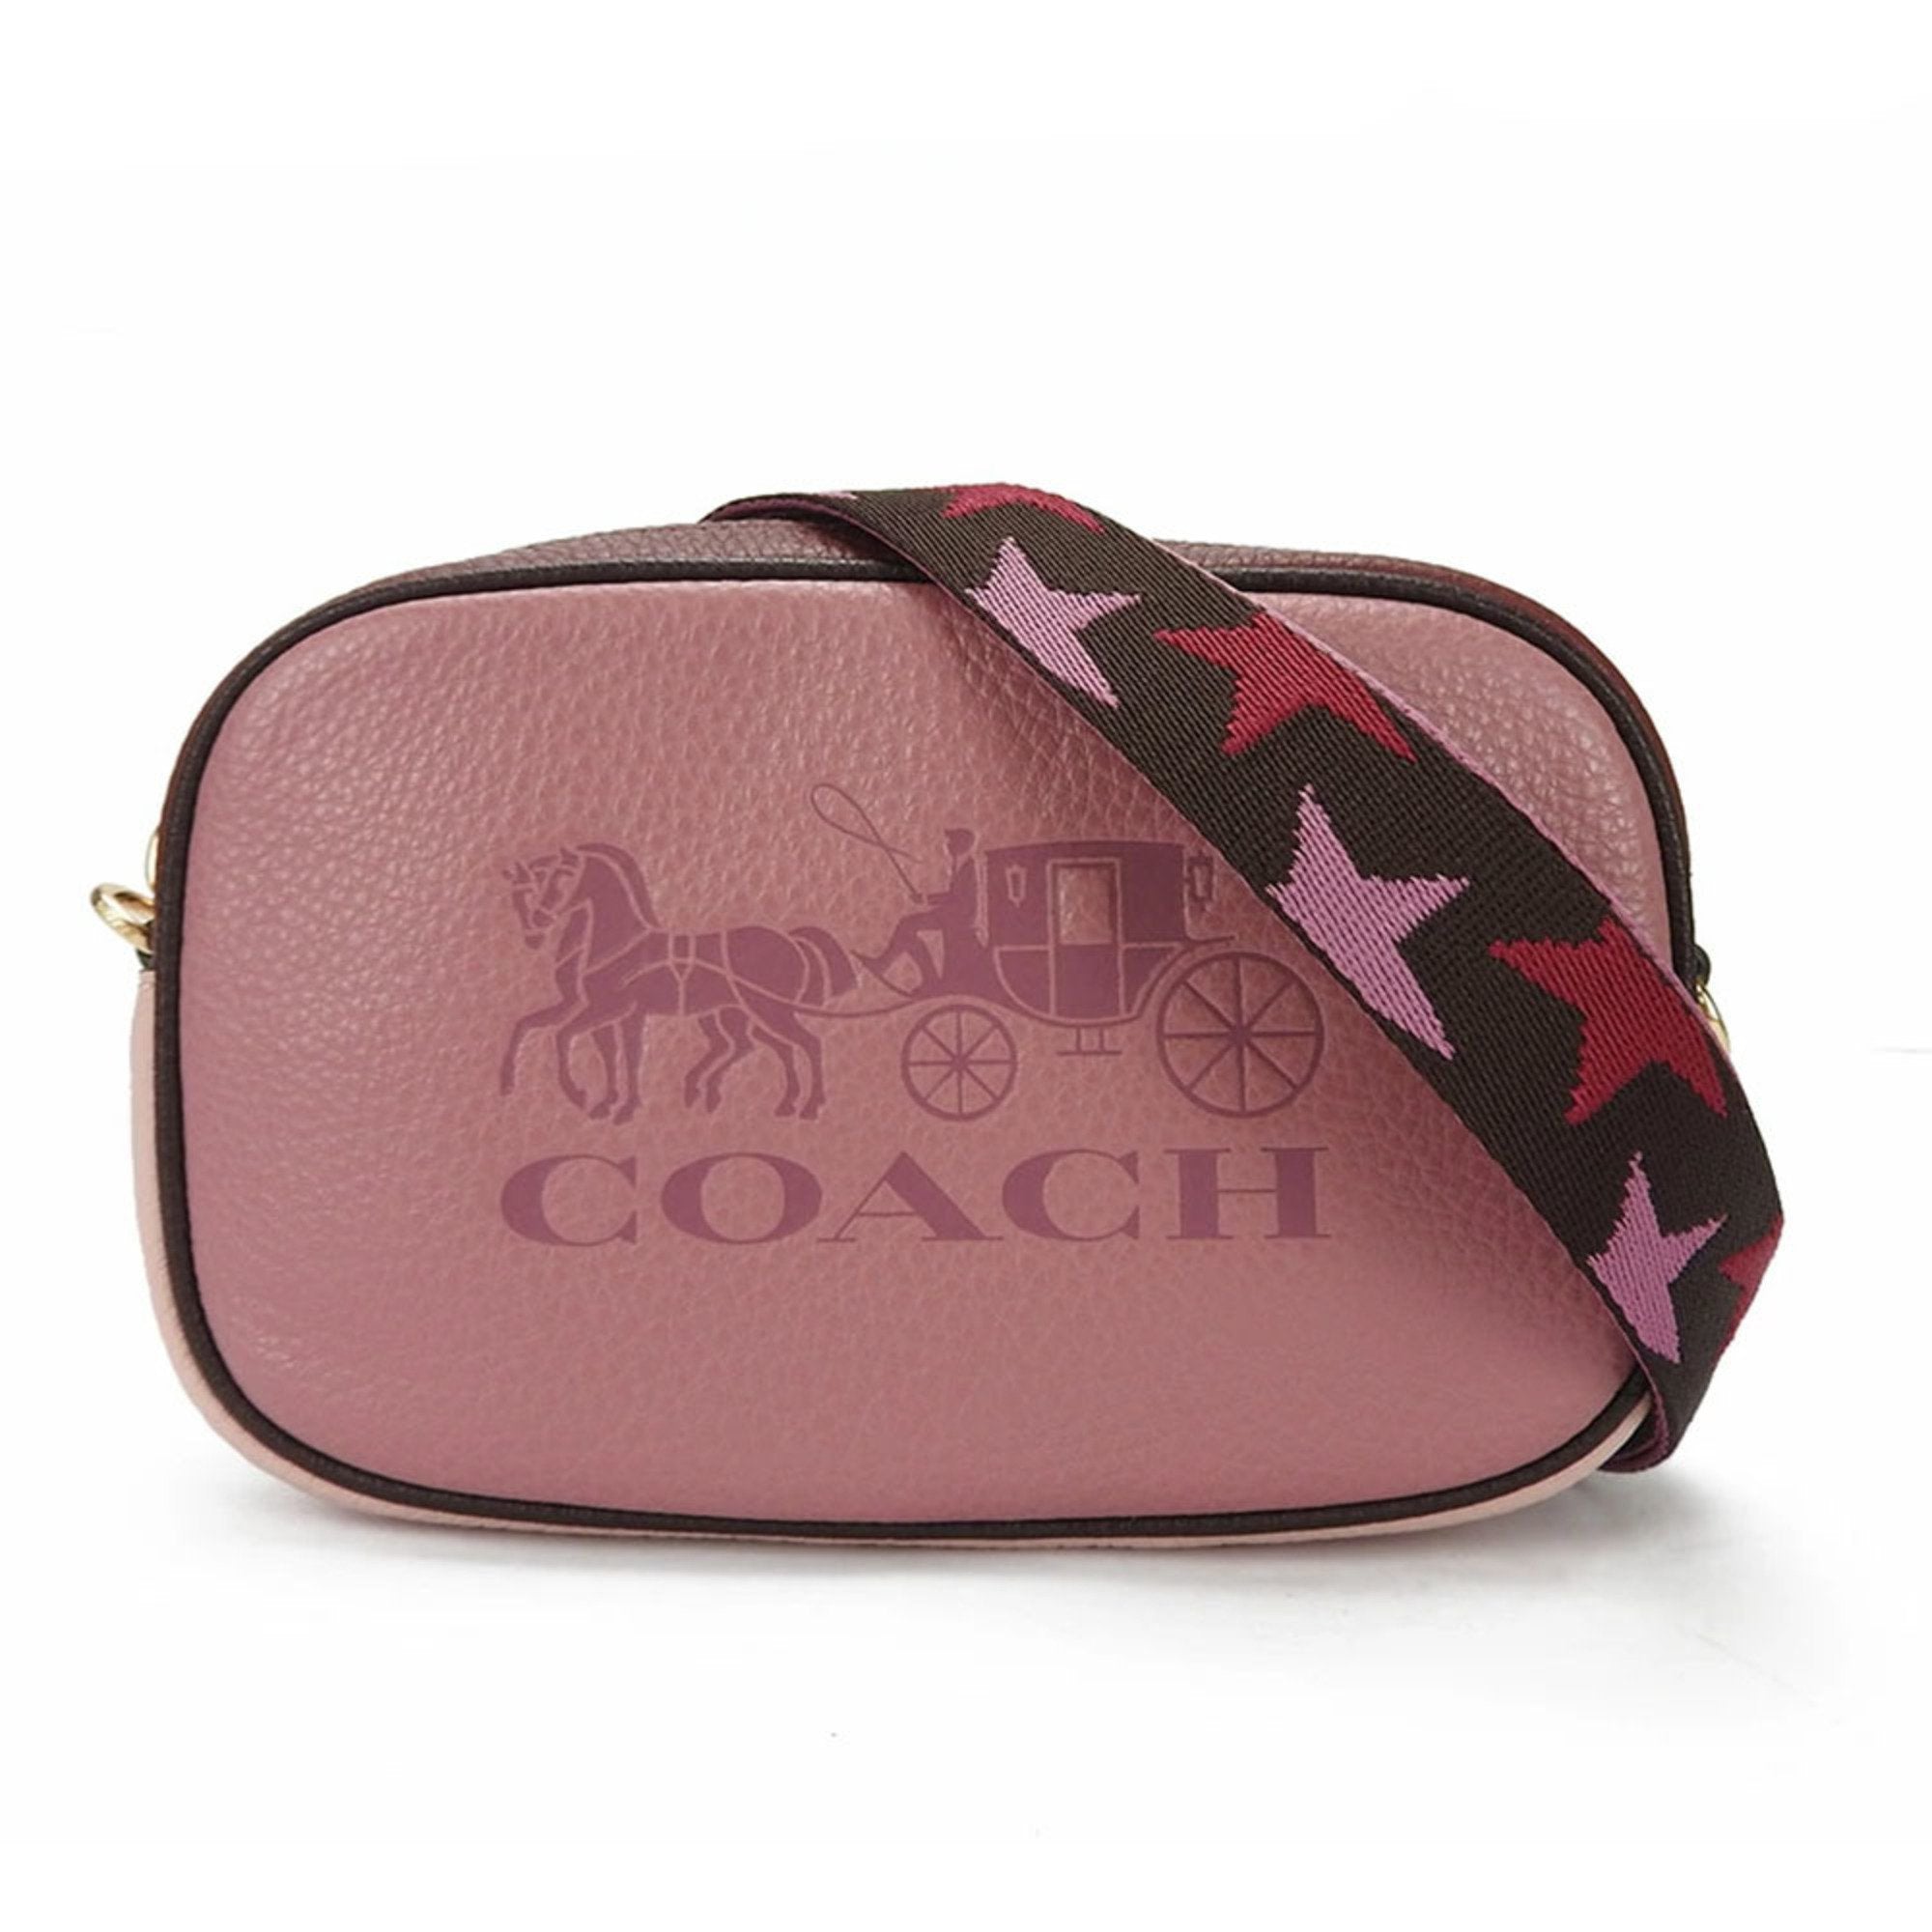 Vintage light pink Coach purse. In good vintage... - Depop